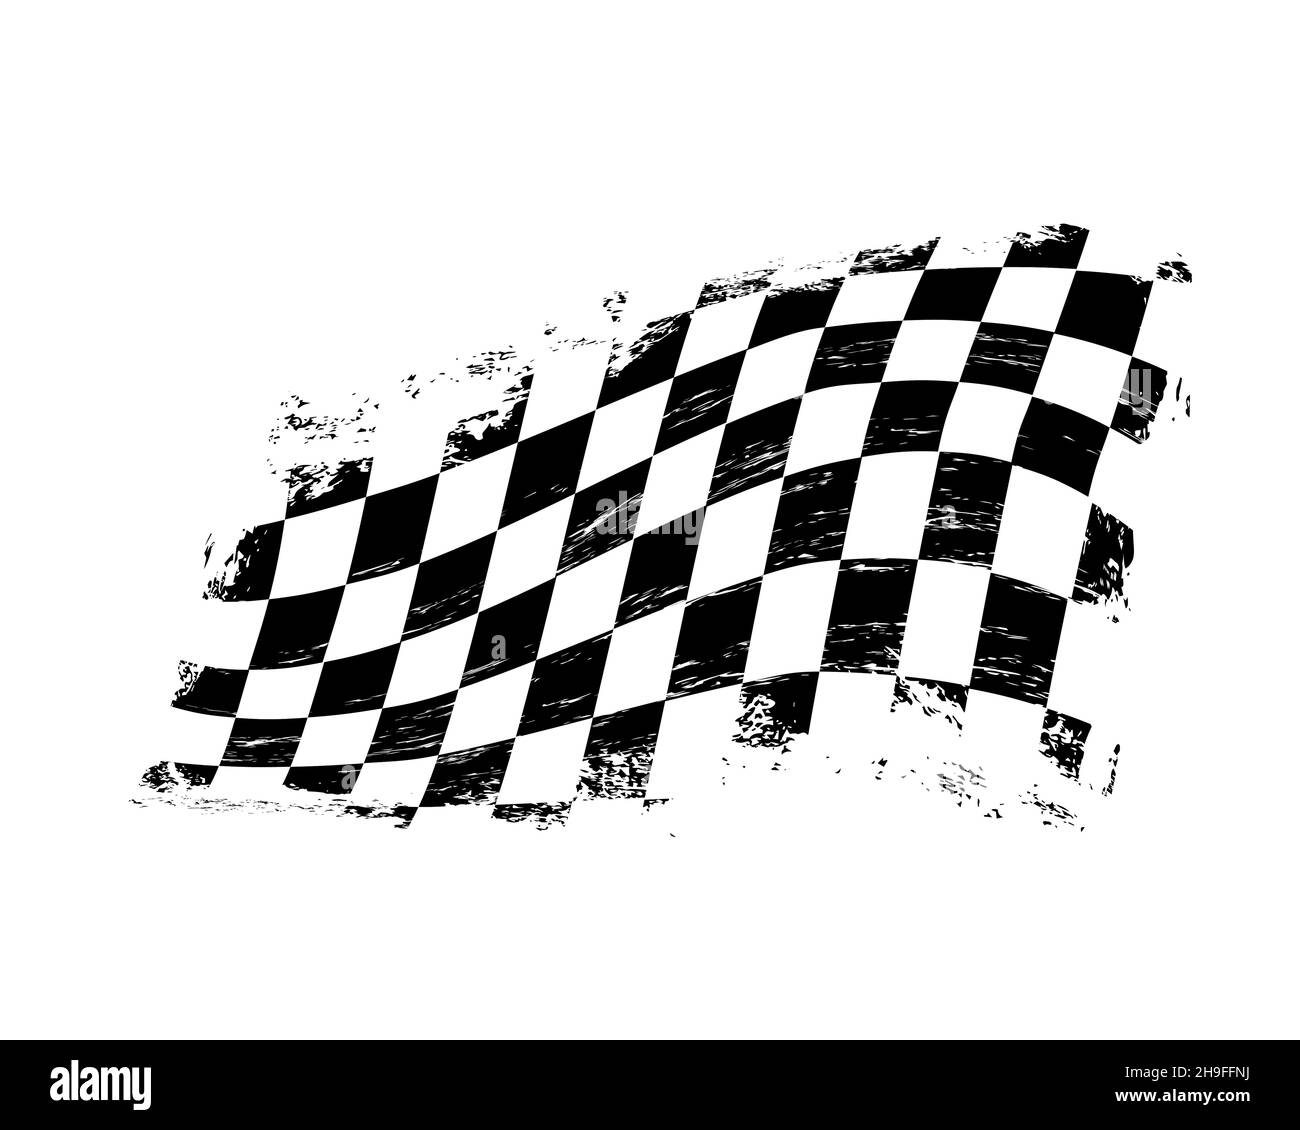 Grunge scacchi bandiera sportiva da corsa con graffi, vettore. Gara di auto o rally, motorsport, bandiera di arrivo e partenza con pedine bianche e nere. Motocro Illustrazione Vettoriale